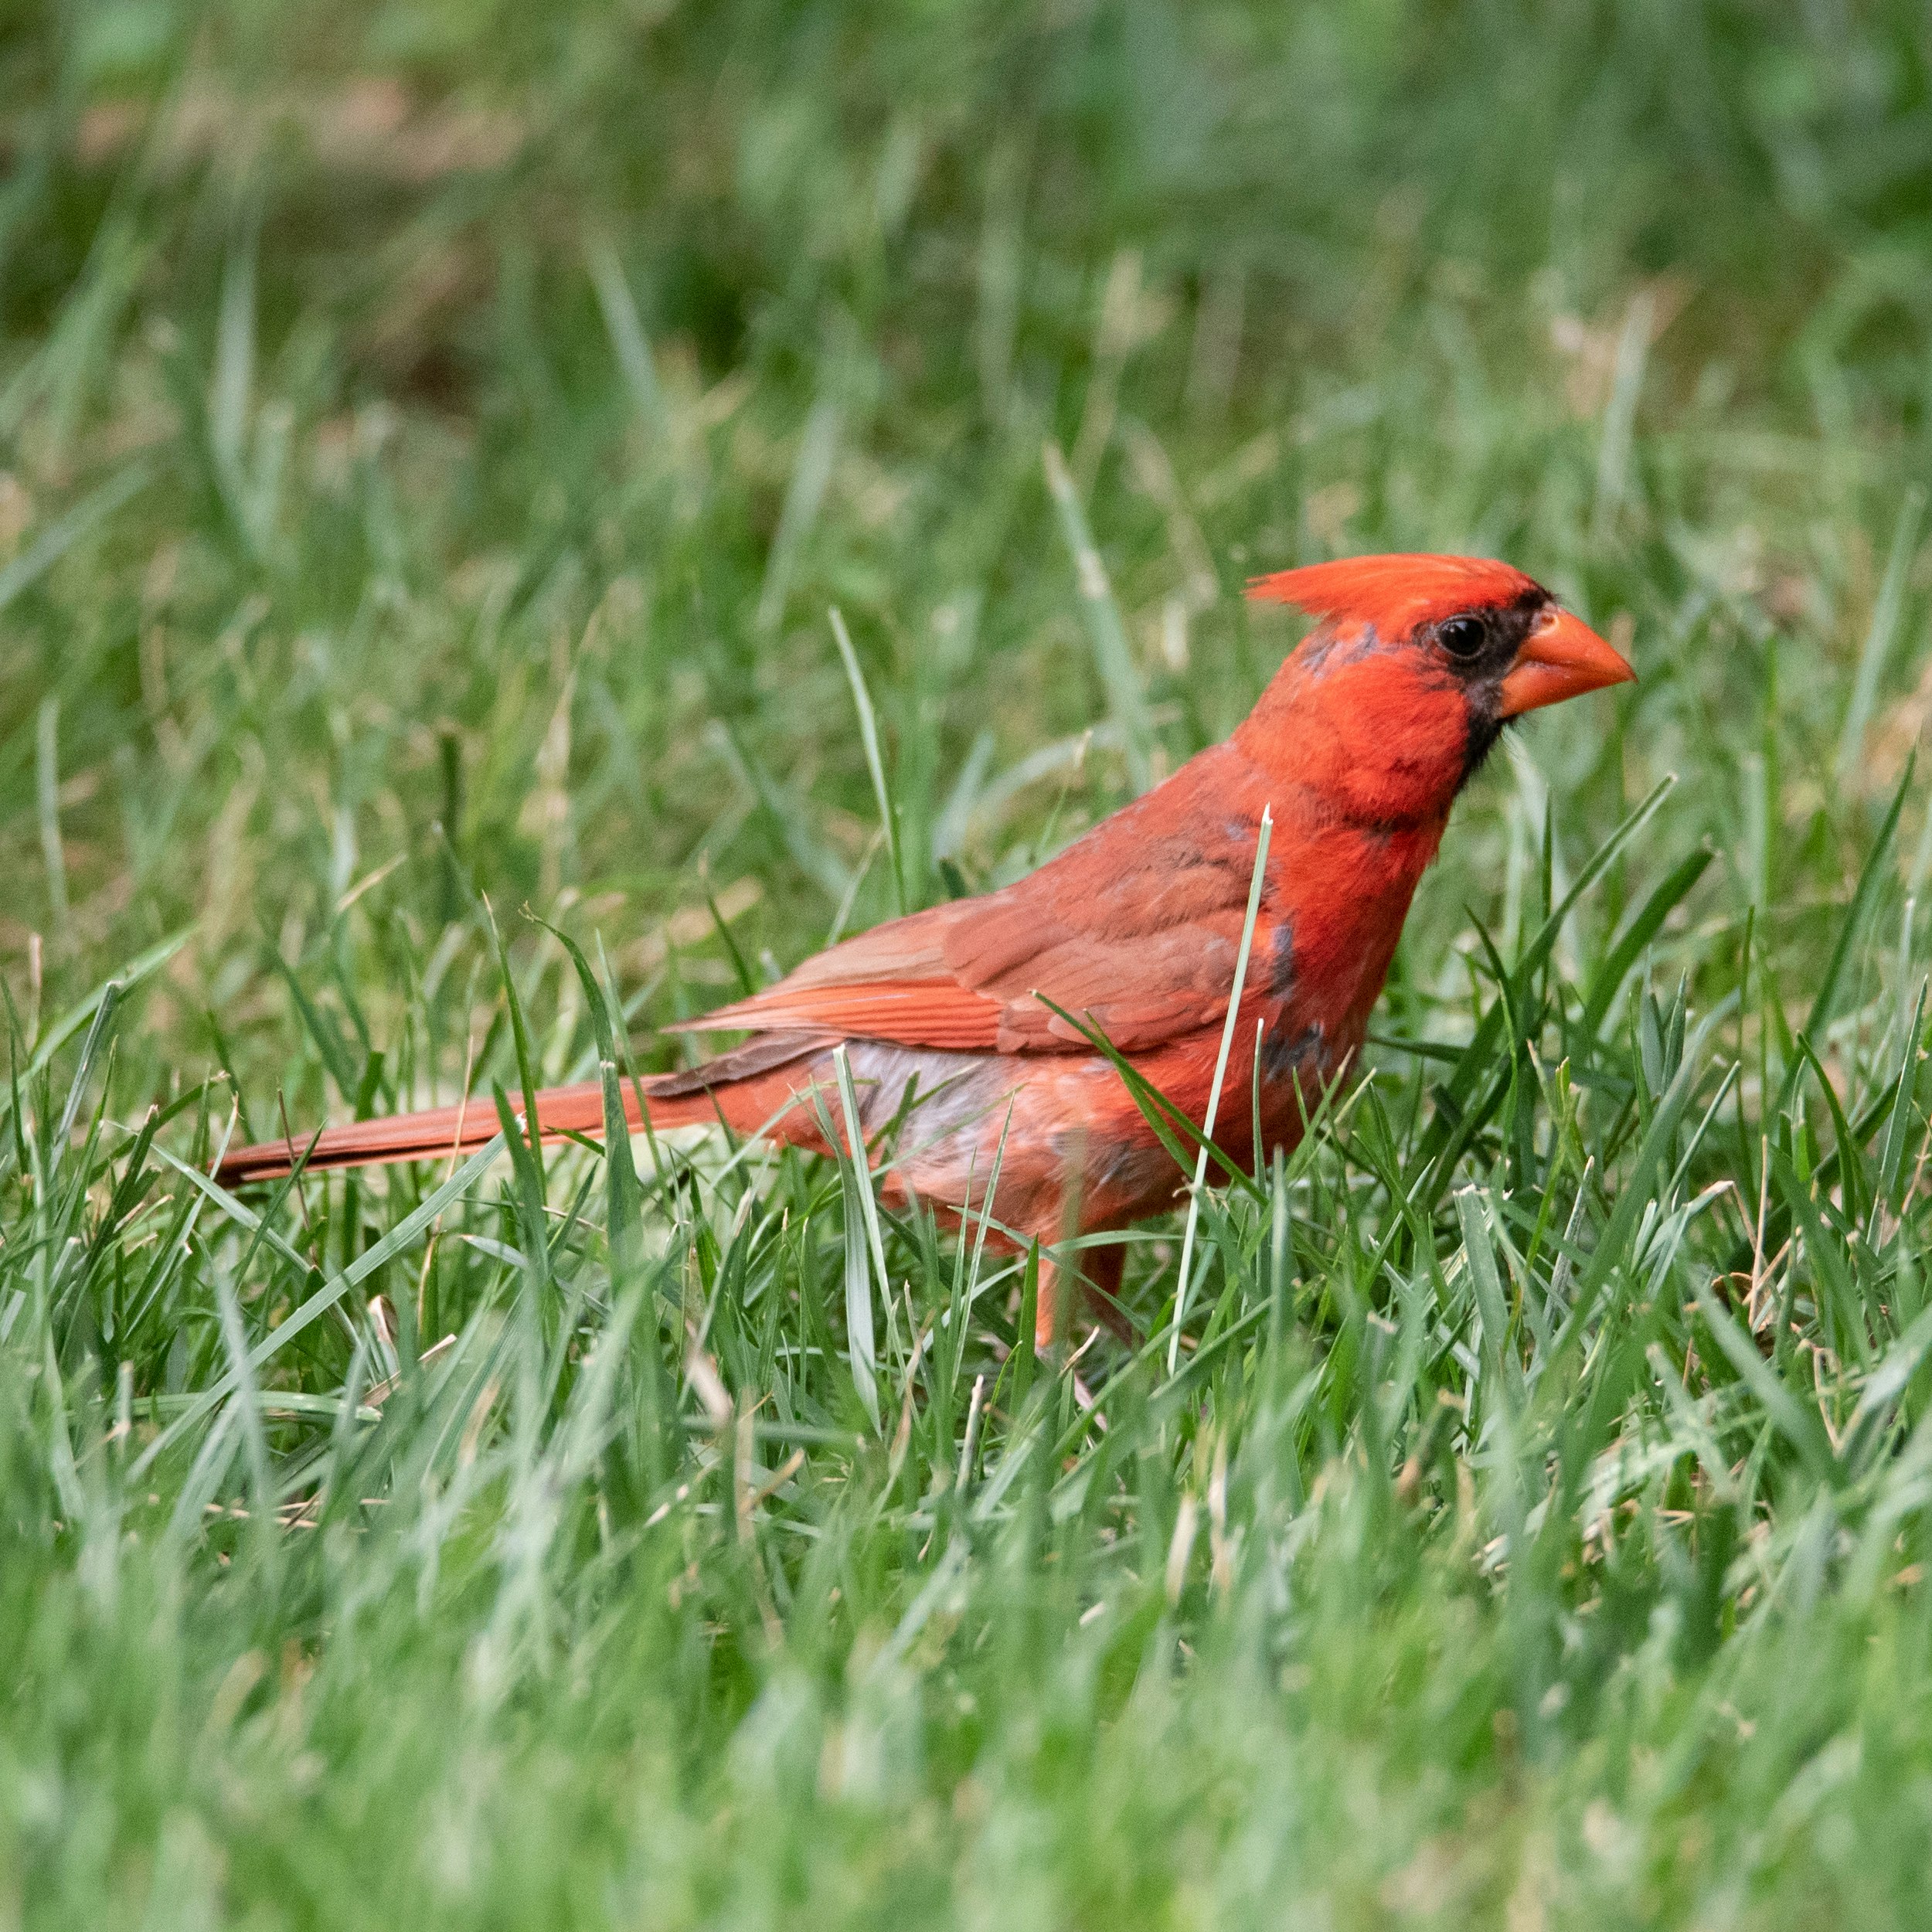 Red cardinal bird standing in grass.